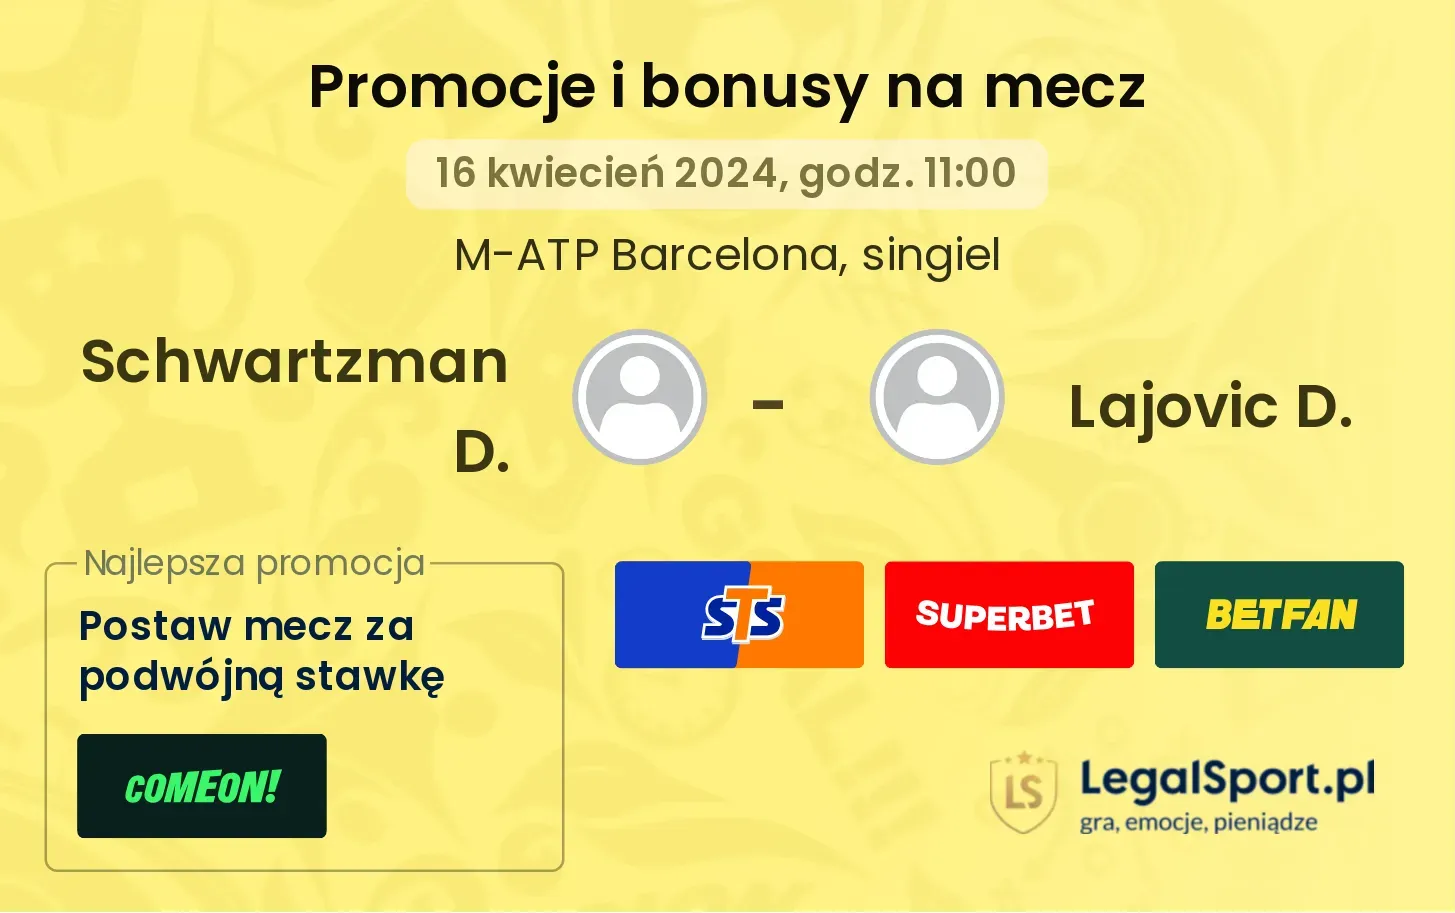 Schwartzman D. - Lajovic D. promocje bonusy na mecz